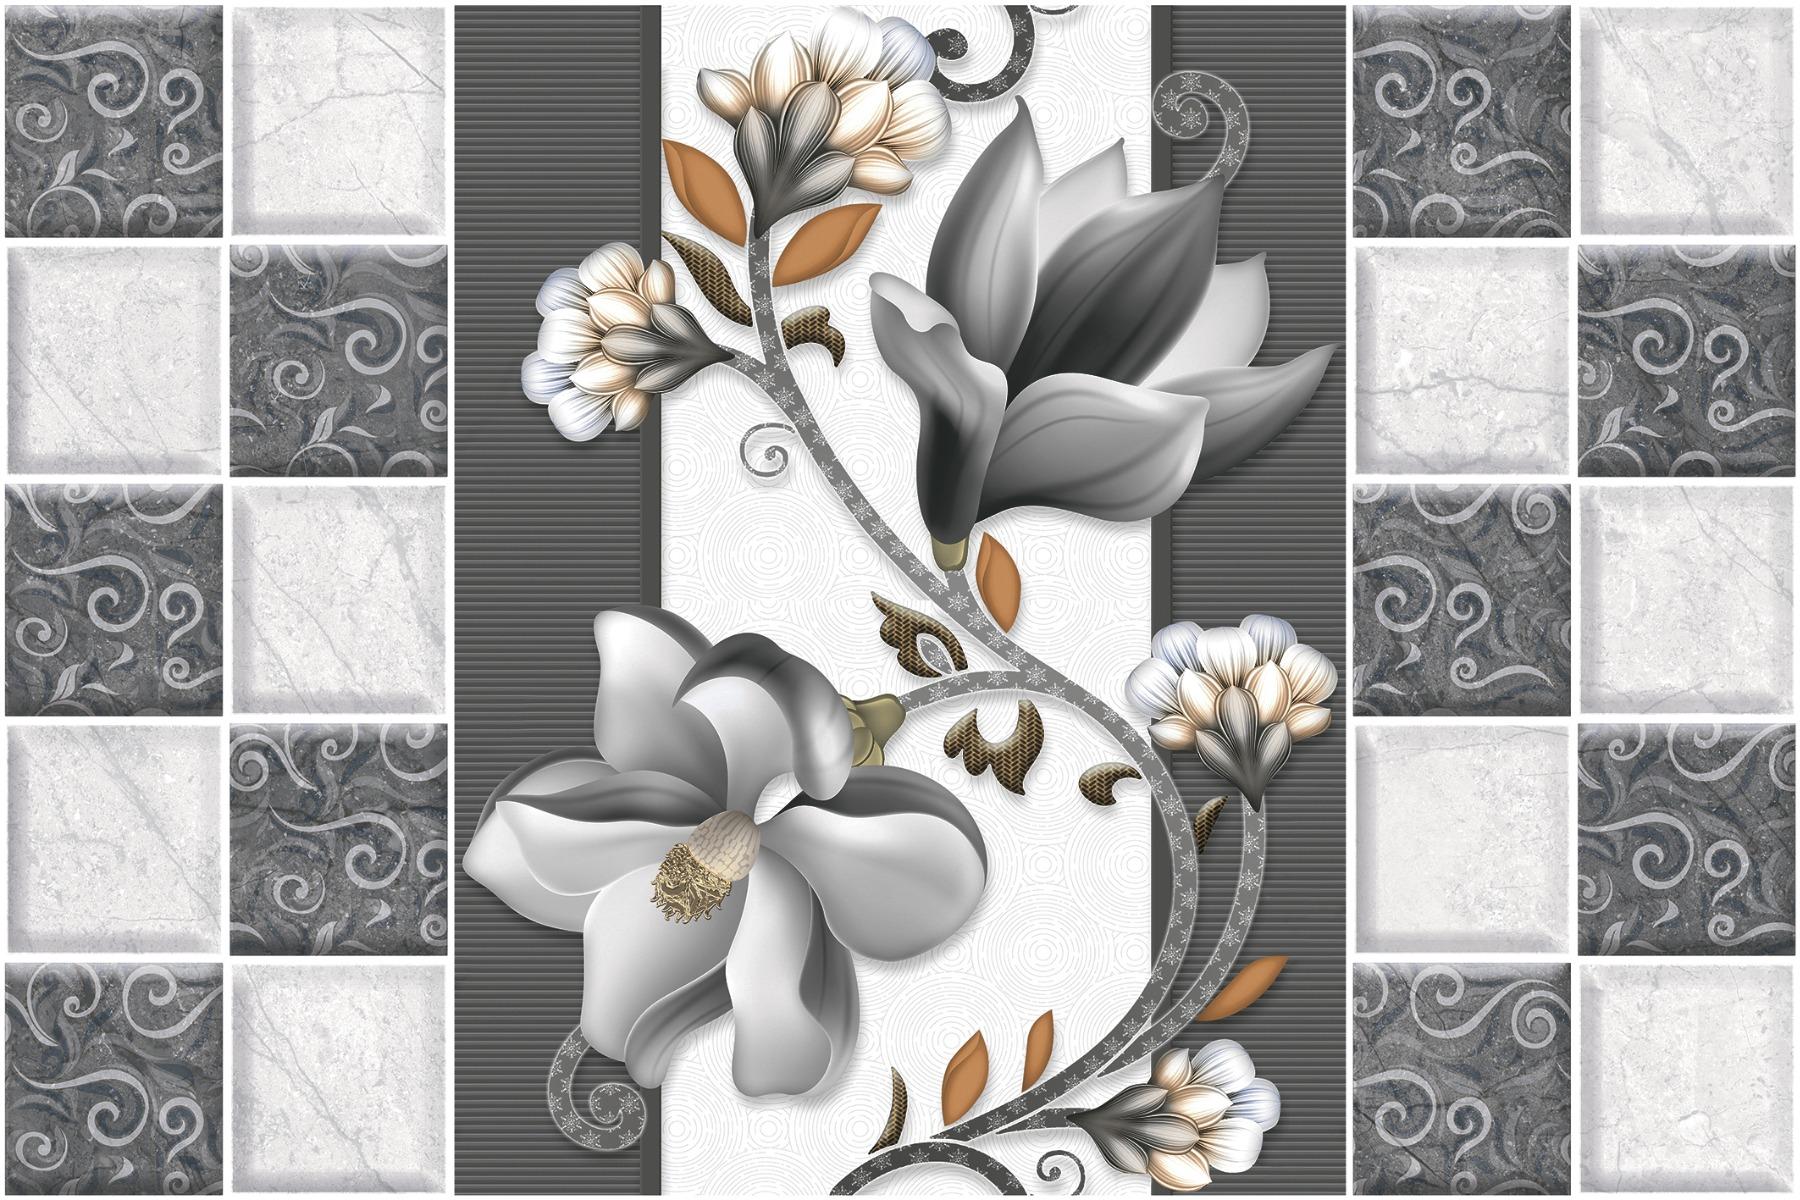 Marble Tiles for Bathroom Tiles, Living Room Tiles, Kitchen Tiles, Bedroom Tiles, Balcony Tiles